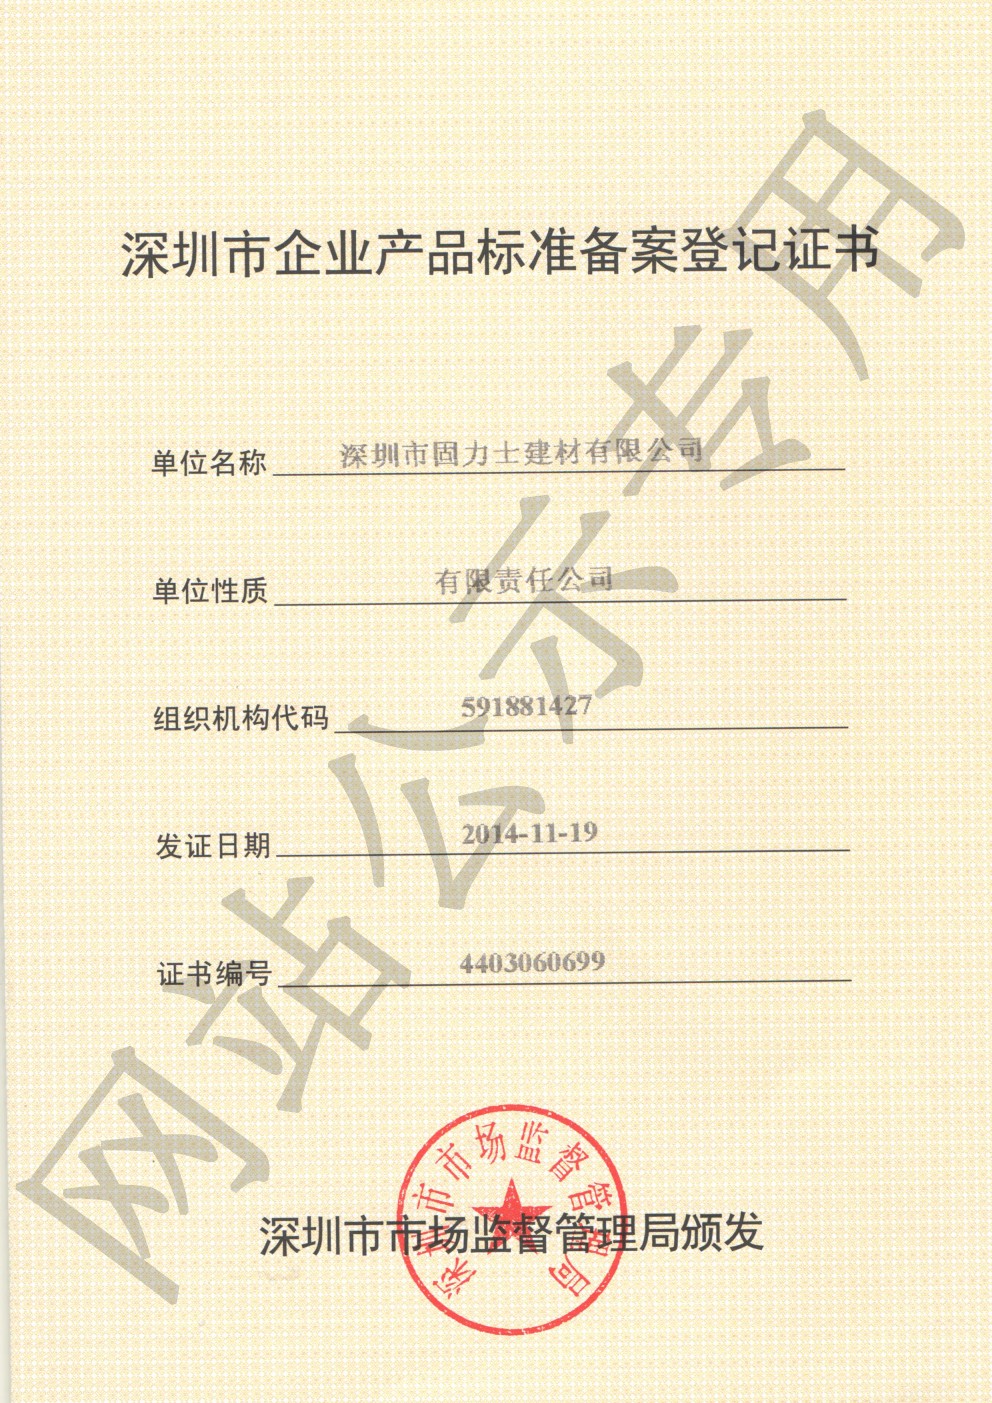 海曙企业产品标准登记证书